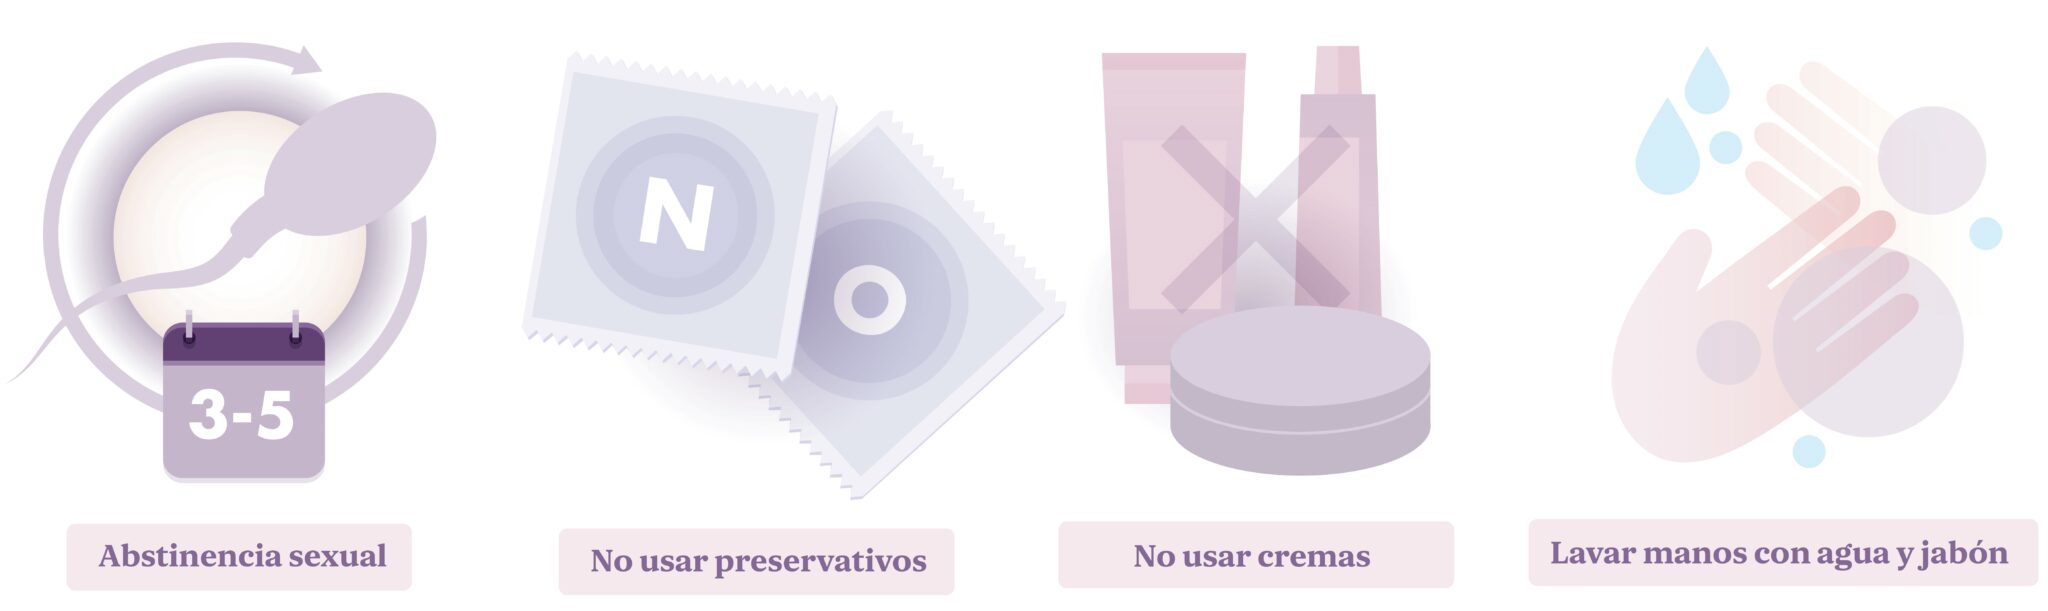 Kit de extracción de muestras de esperma - MED1000740 - Medesign